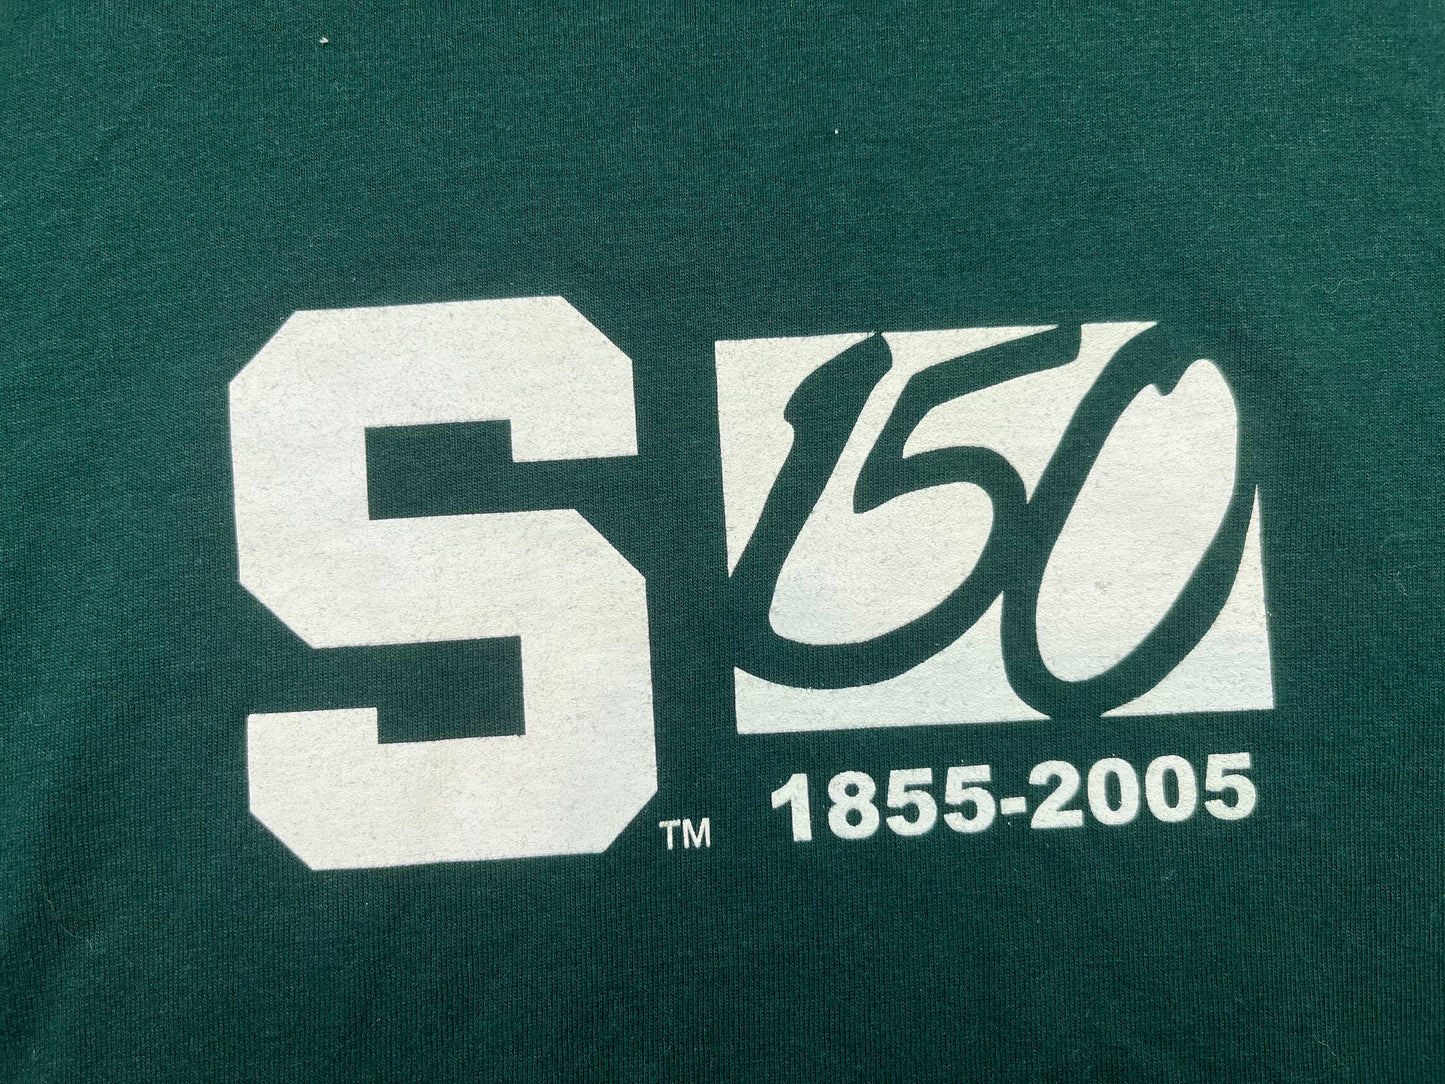 Michigan State 150th Anniversary T-Shirt